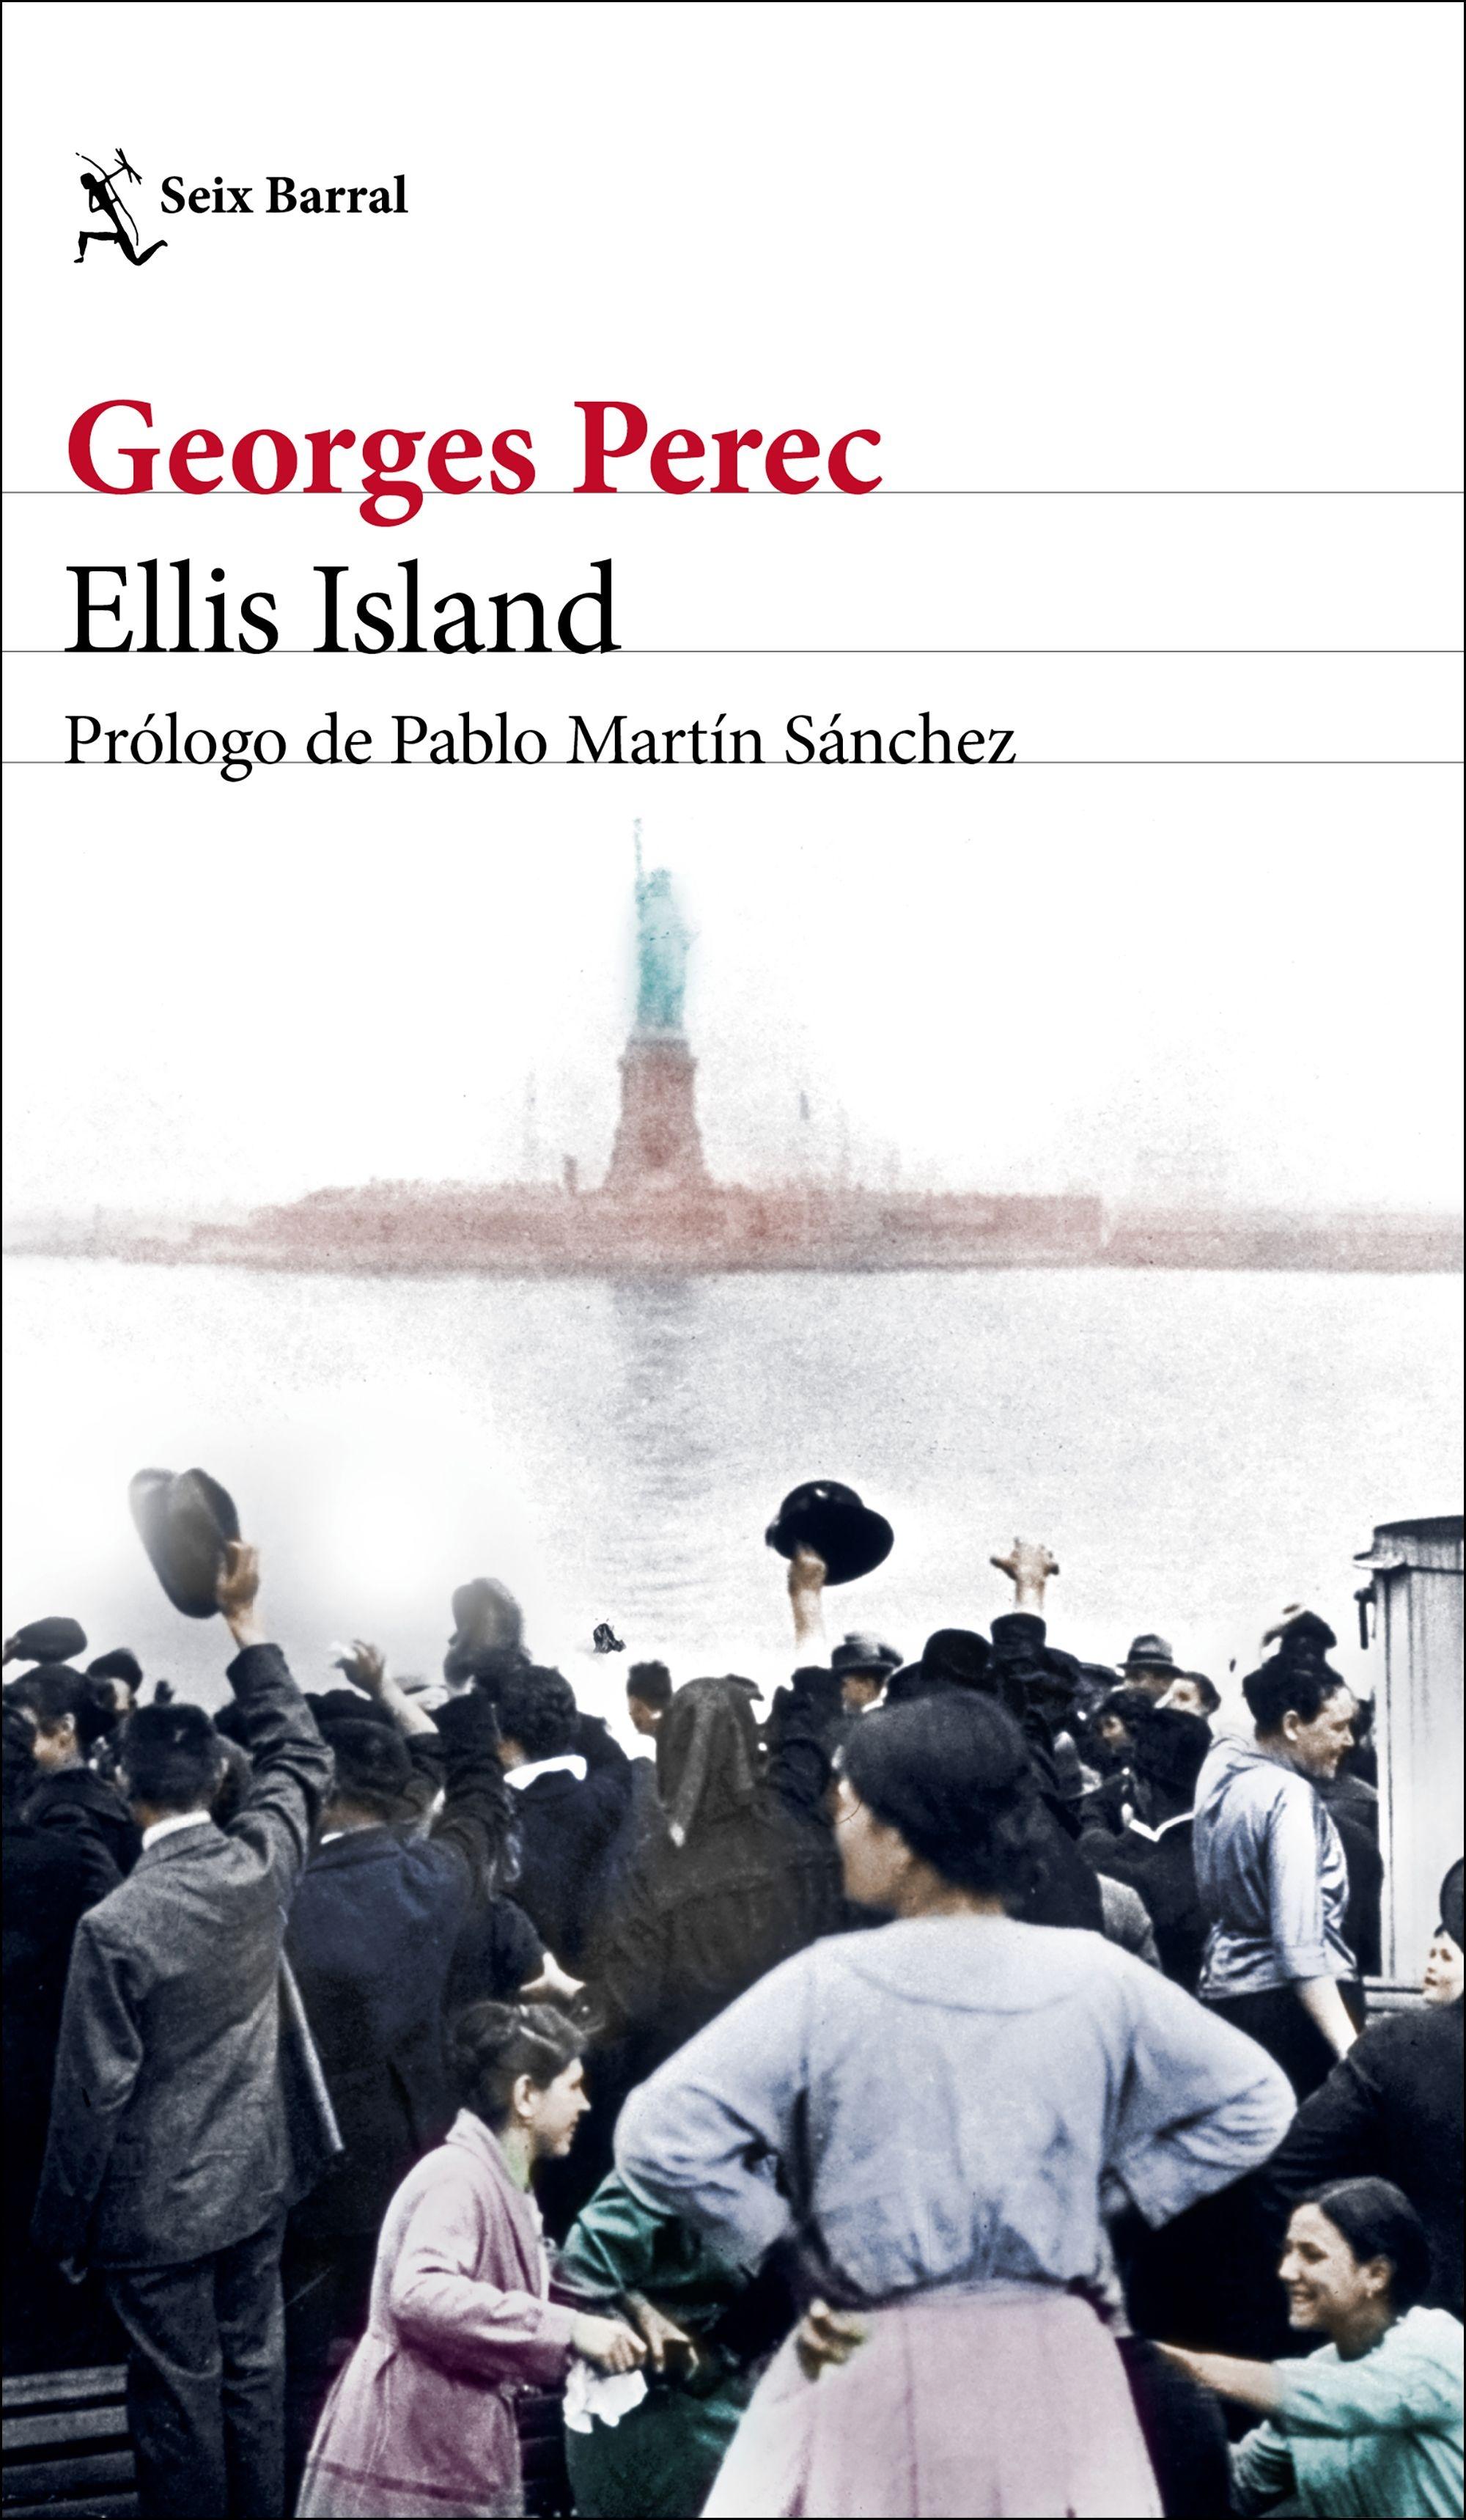 Ellis Island "Prólogo de Pablo Martín Sánchez". 